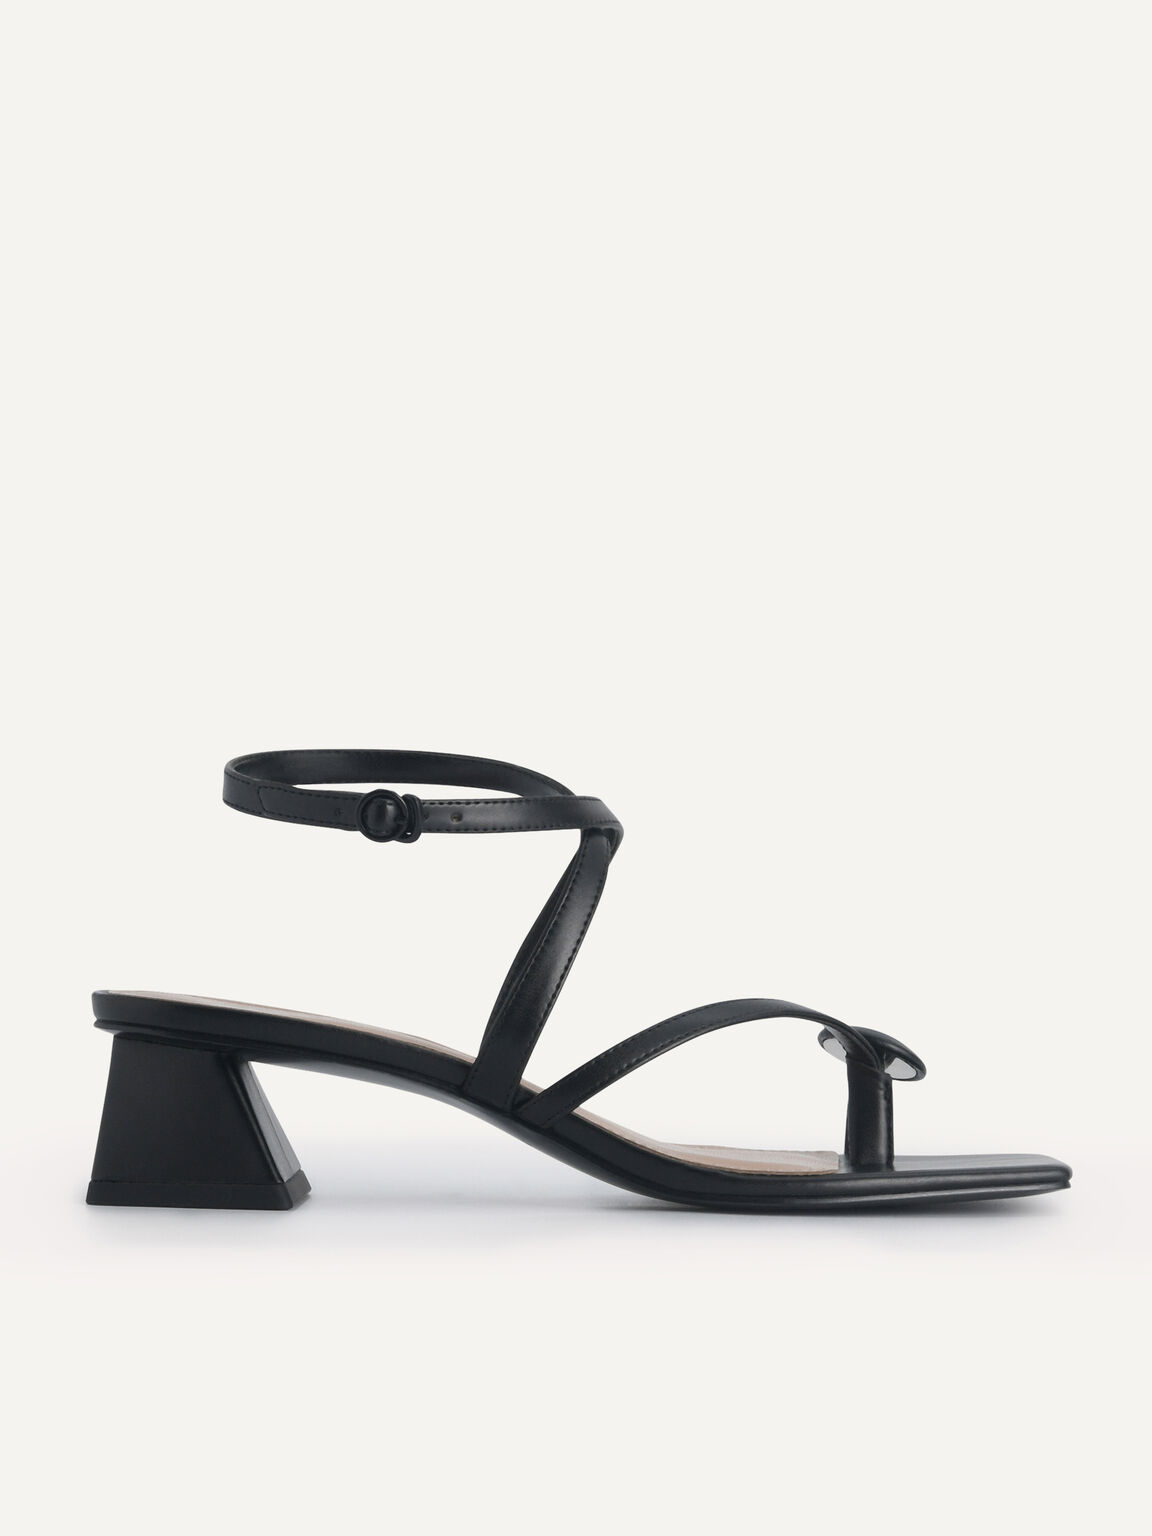 Strappy Toe-Loop Heeled Sandals, Black